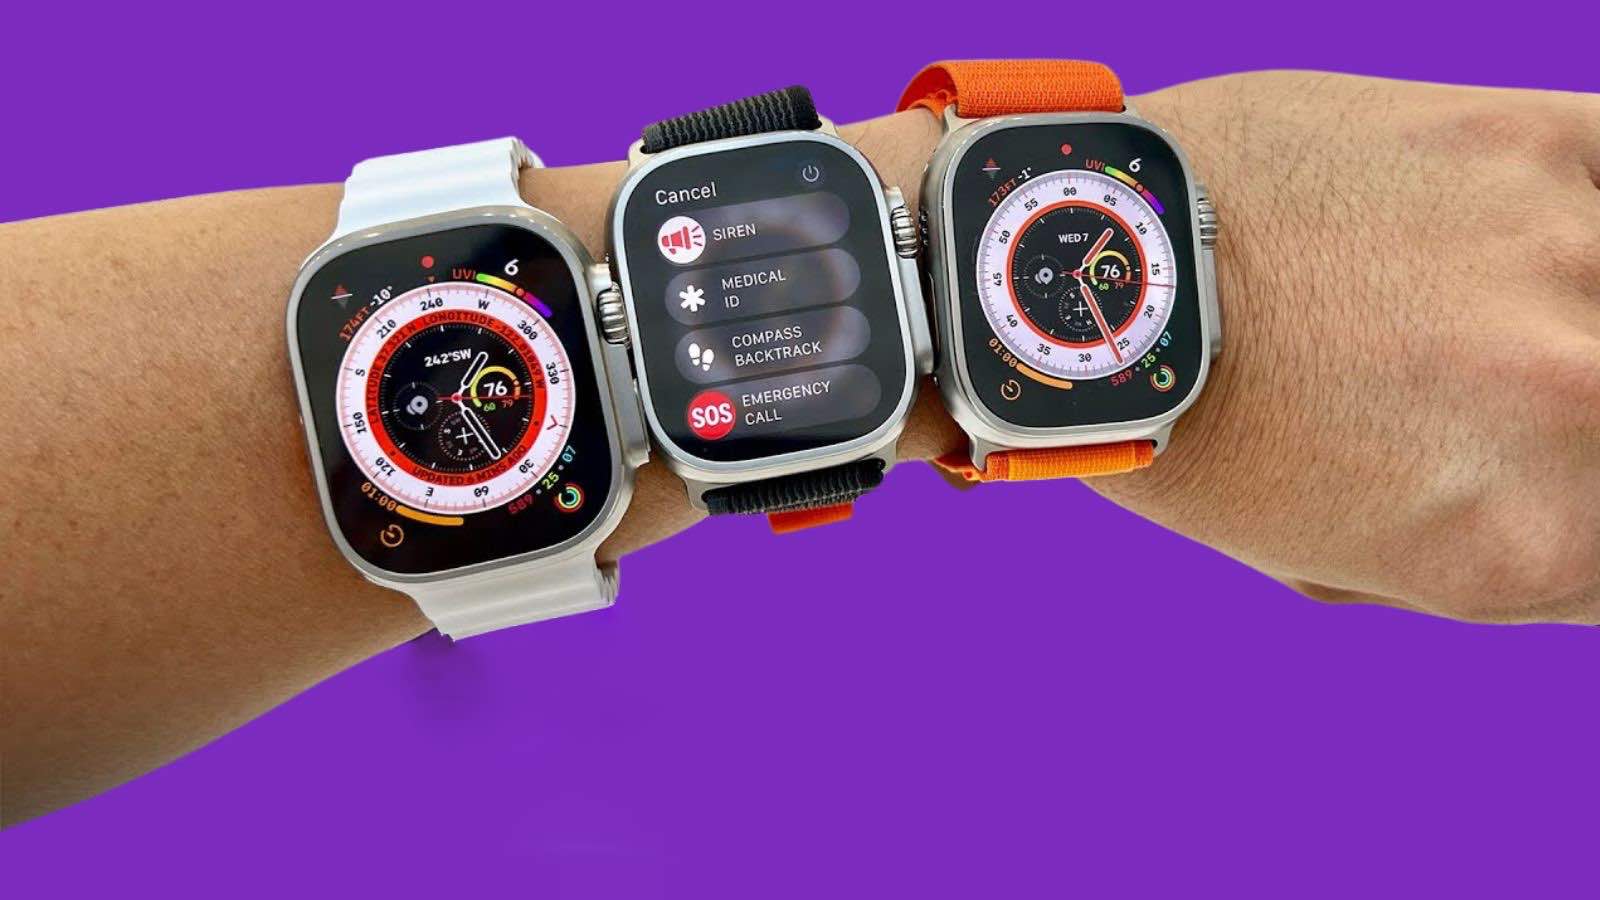 Aké zdravotné podmienky vám môžu hodinky Apple Watch pomôcť sledovať?